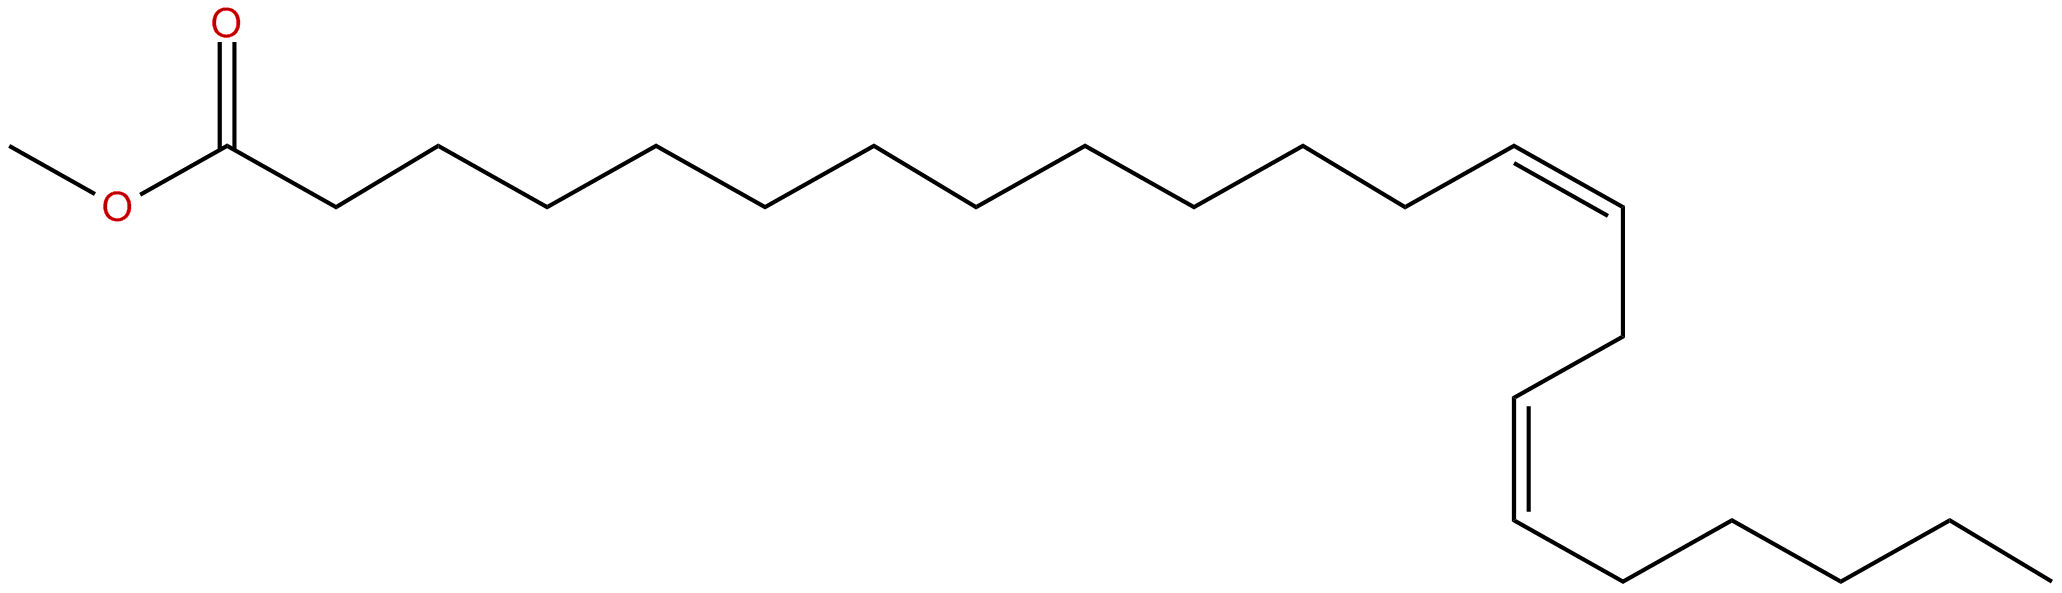 Image of methyl Z,Z 13,16-docosadienoate